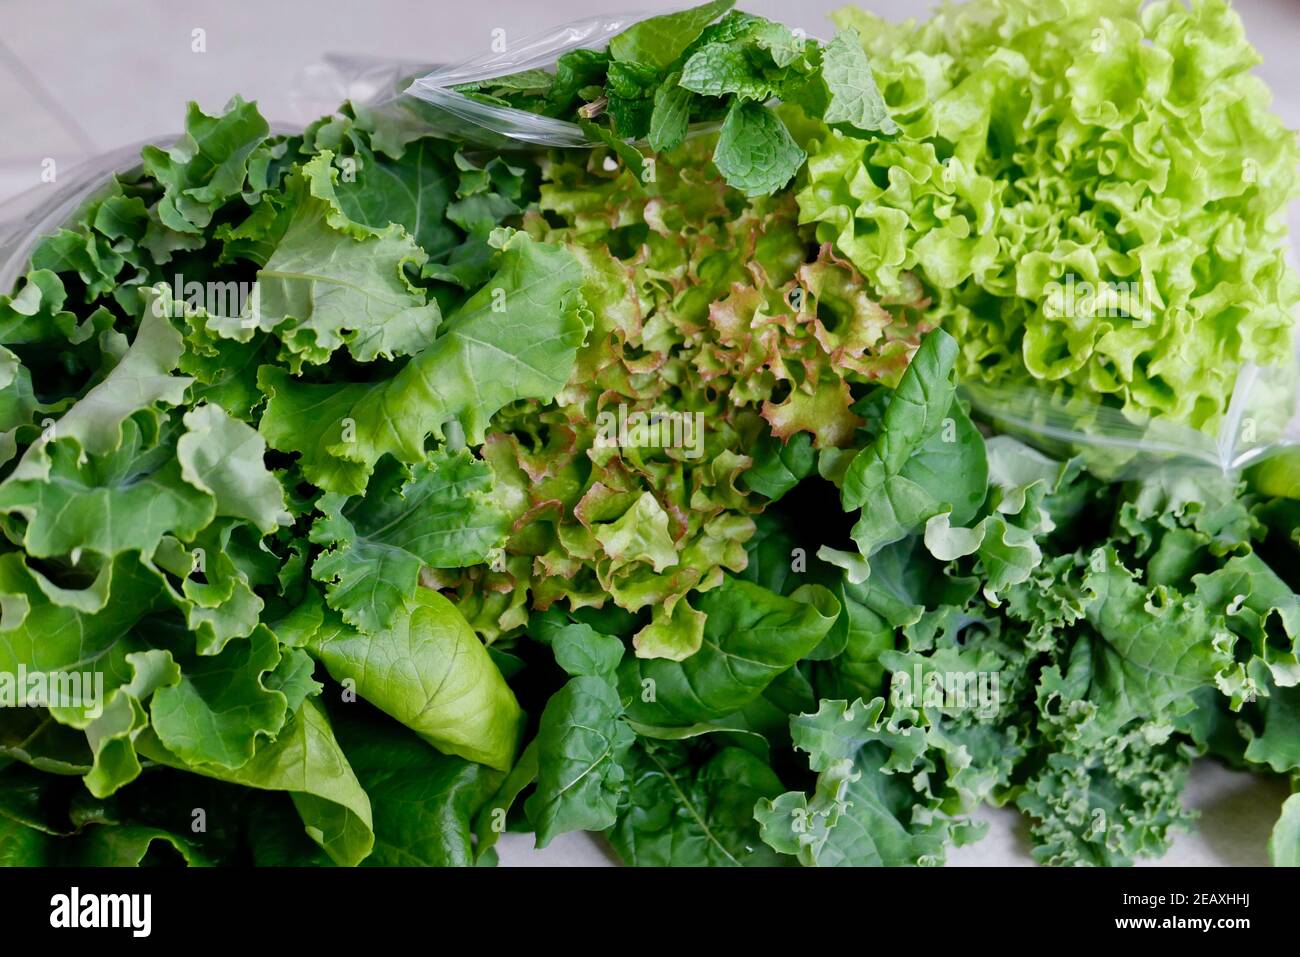 Frisches hydroponisches gemischtes Gemüse - Salat, Grünkohl, Lollo, Rucola Stockfoto